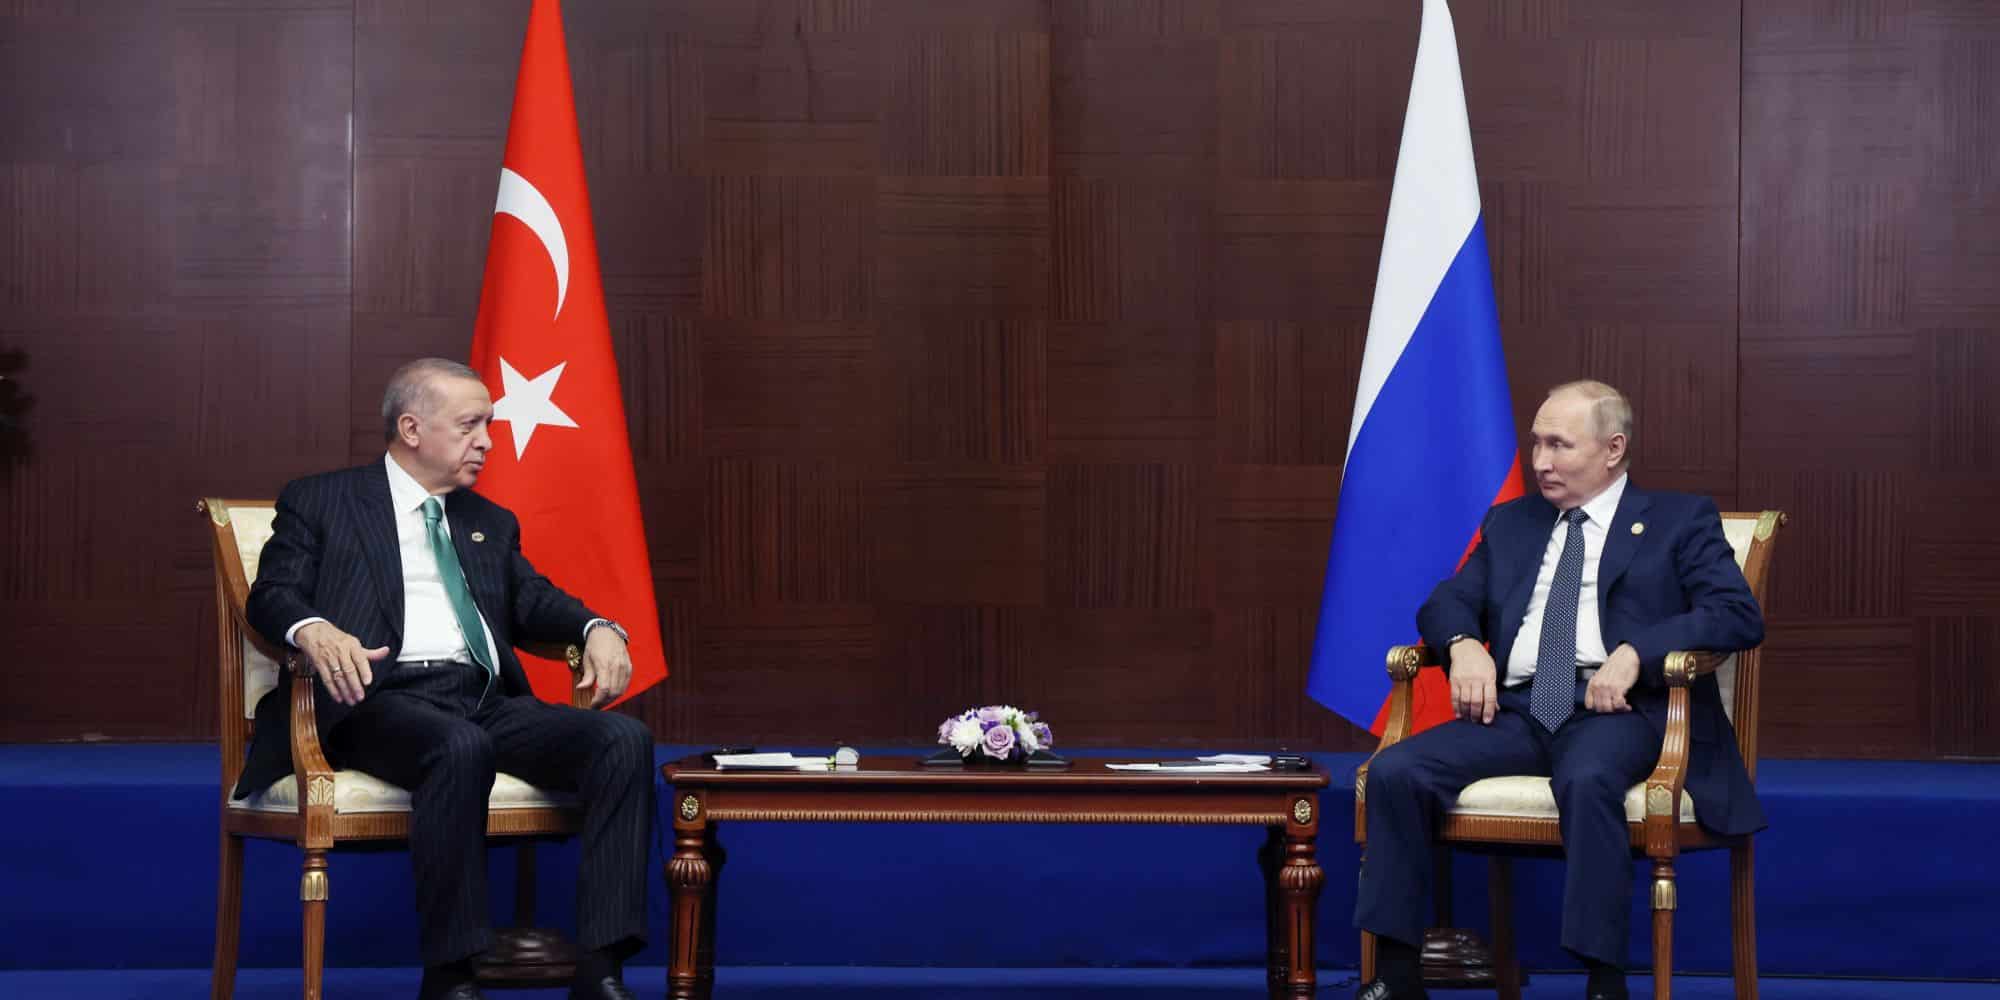 Ο Ρετζέπ Ταγίπ Ερντογάν μαζί με τον Βλαντιμίρ Πούτιν